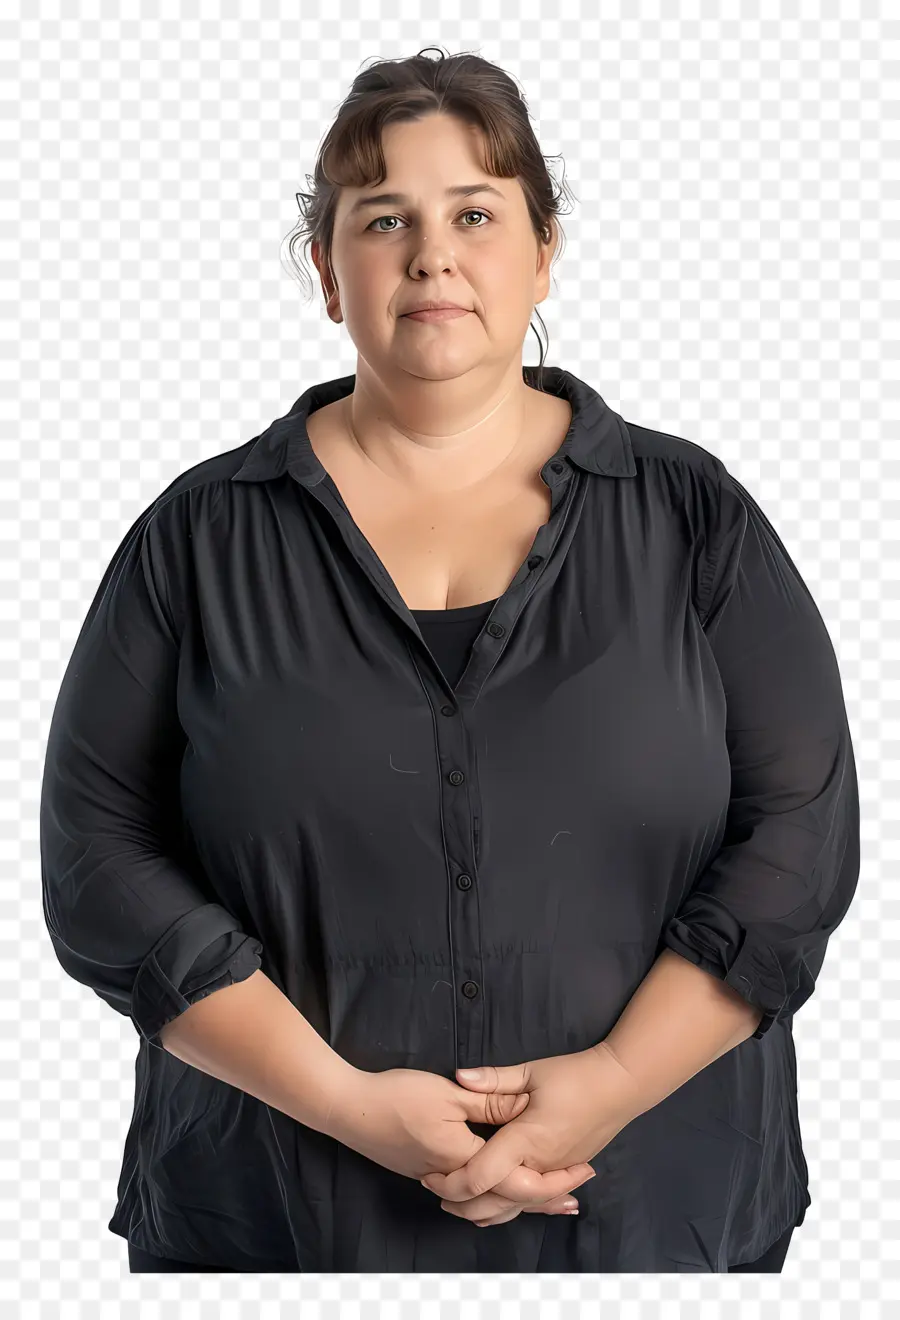 fettleibige Frau Frau schwarzes Hemd dunkle Haare verschränkte die Arme - Frau im schwarzen Hemd verkleinert die Hände feierlich